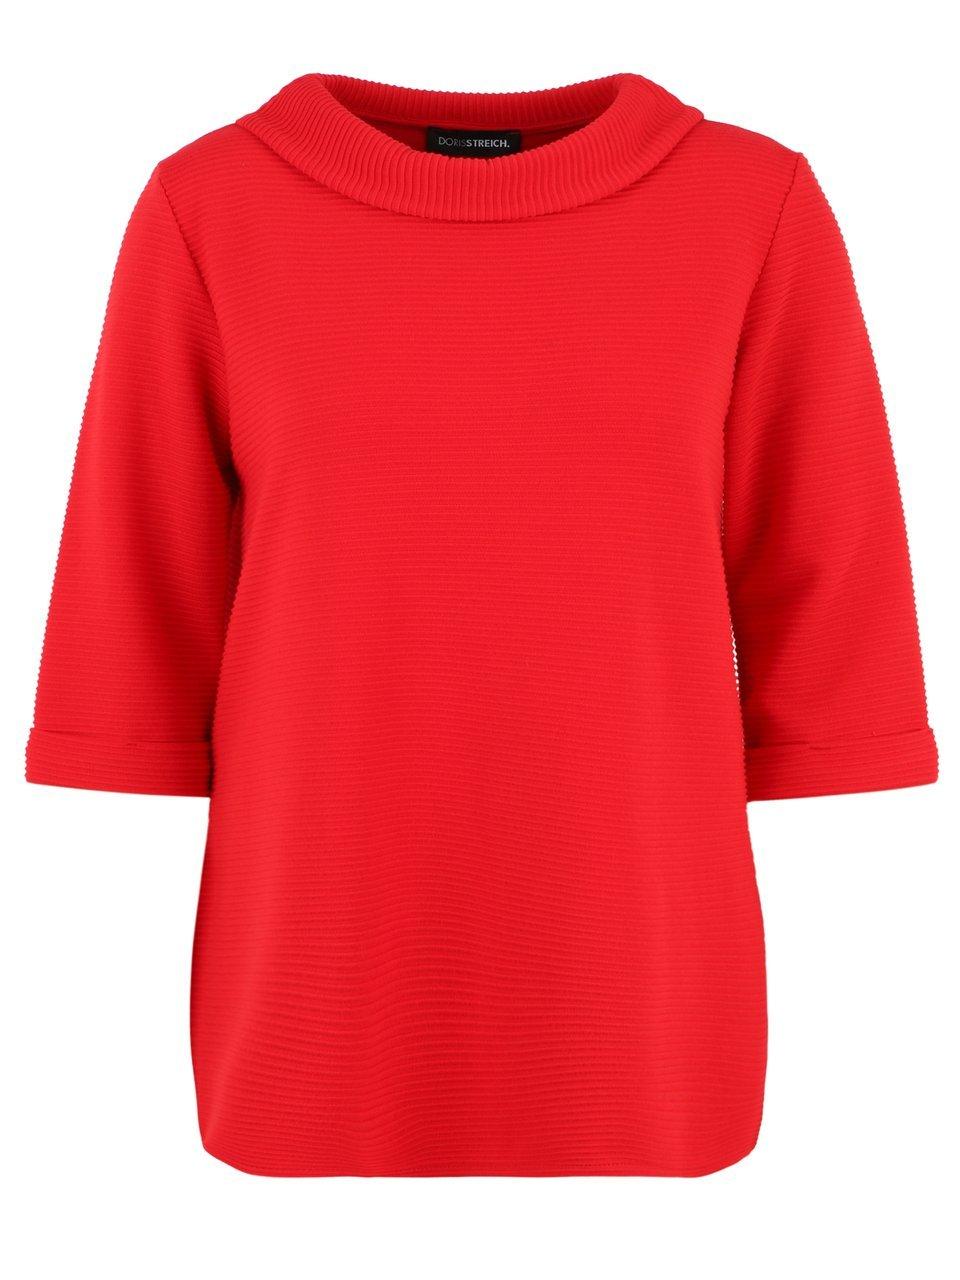 Sweatshirt staande halsboord Van Doris Streich rood